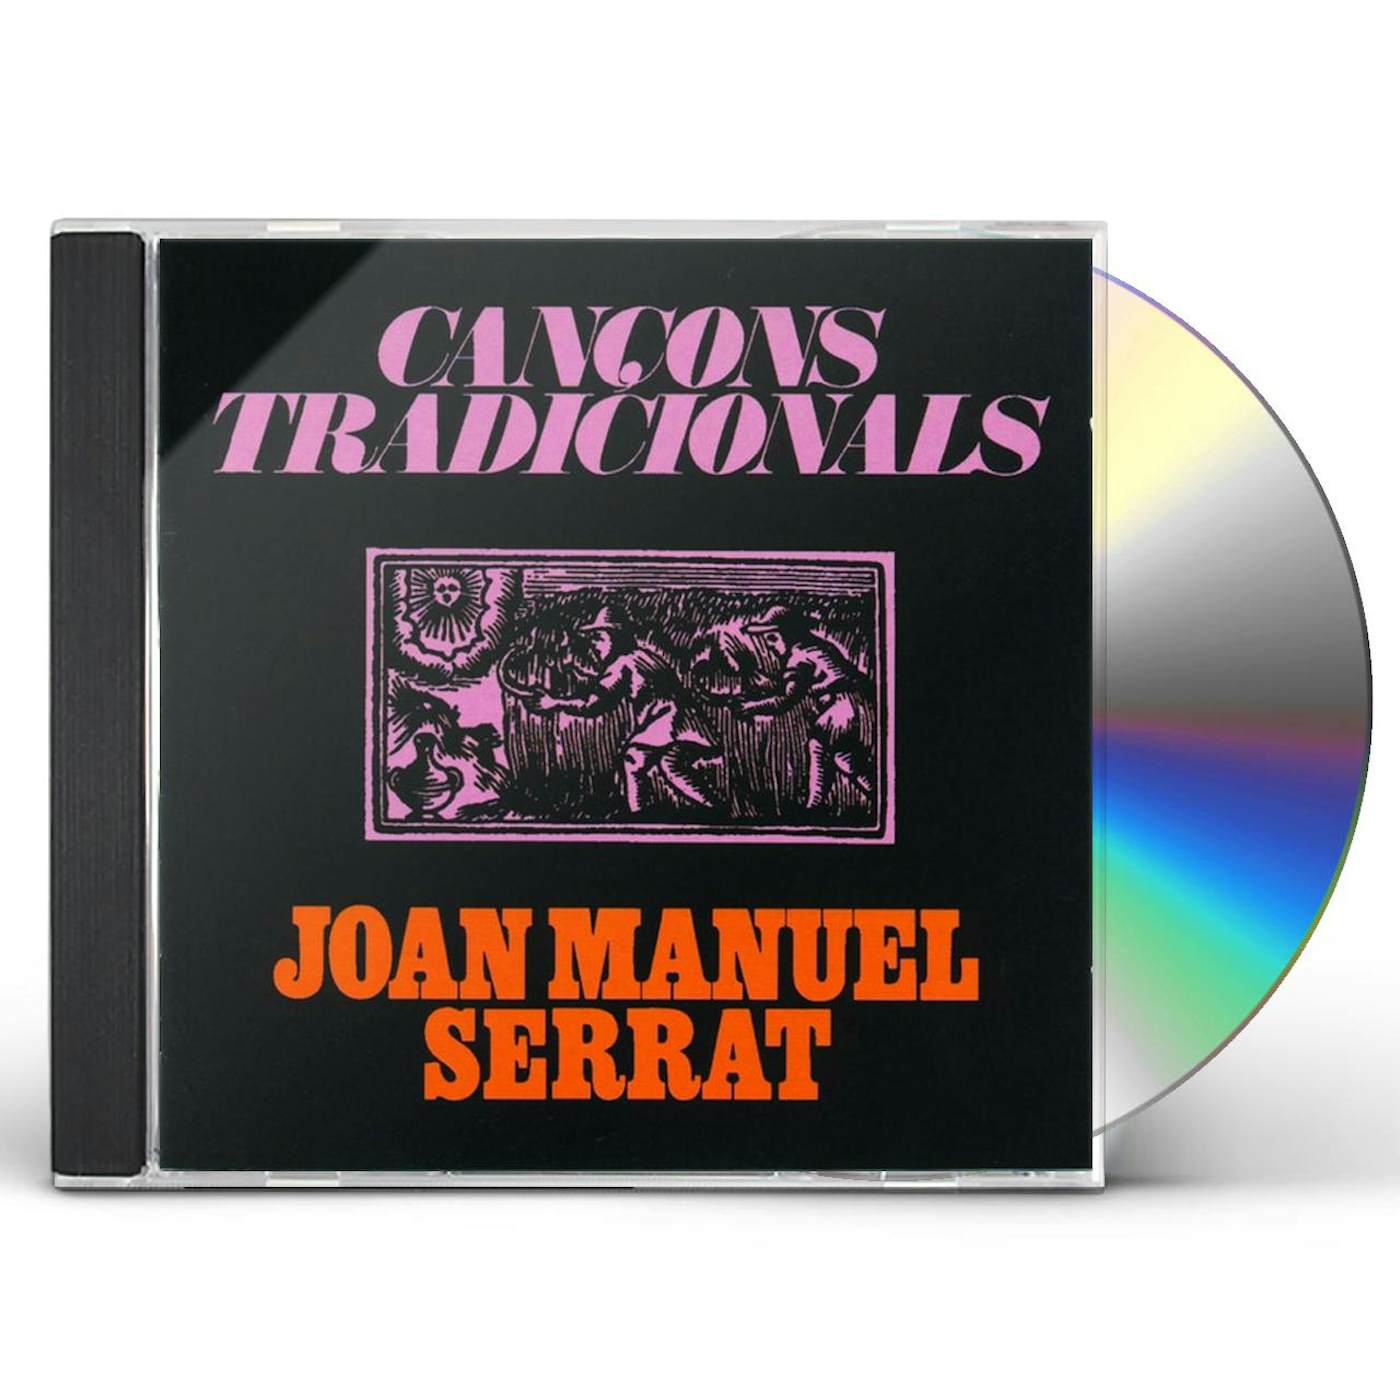 Joan Manuel Serrat CANCONS TRADICIONALS CD